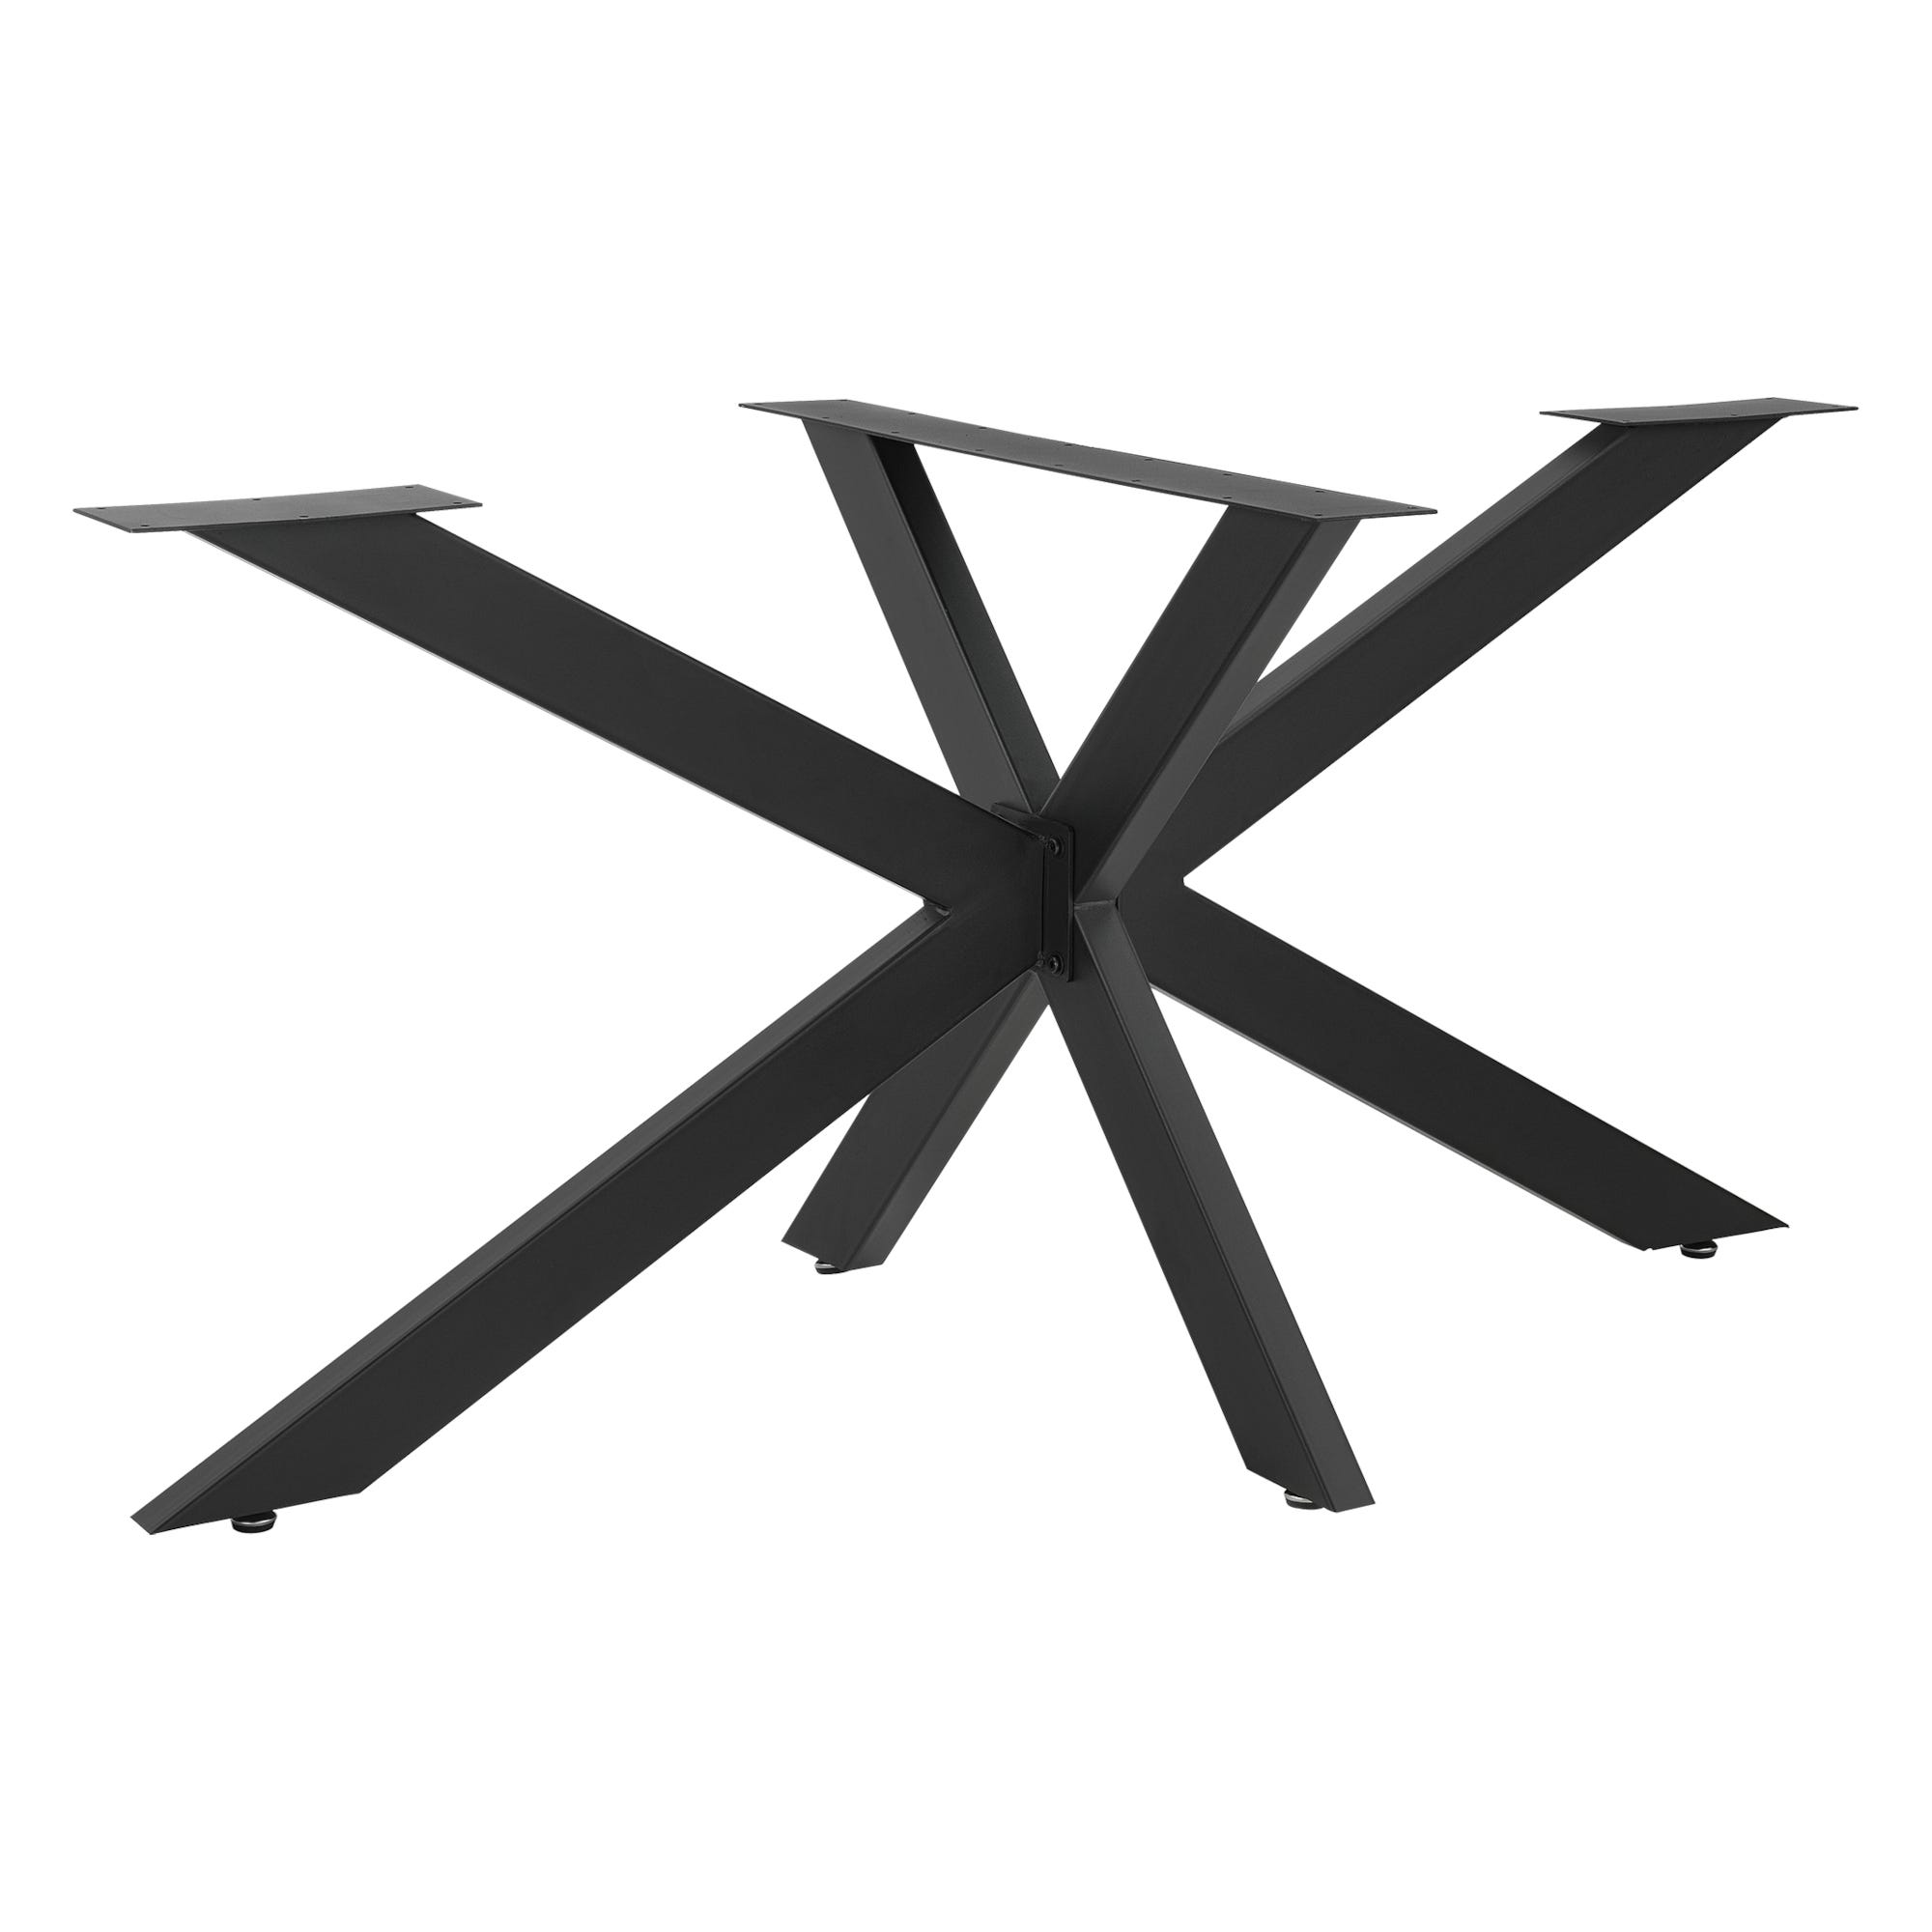 Pata fija de acero para mesas y encimeras 8 x 71 cm color negro